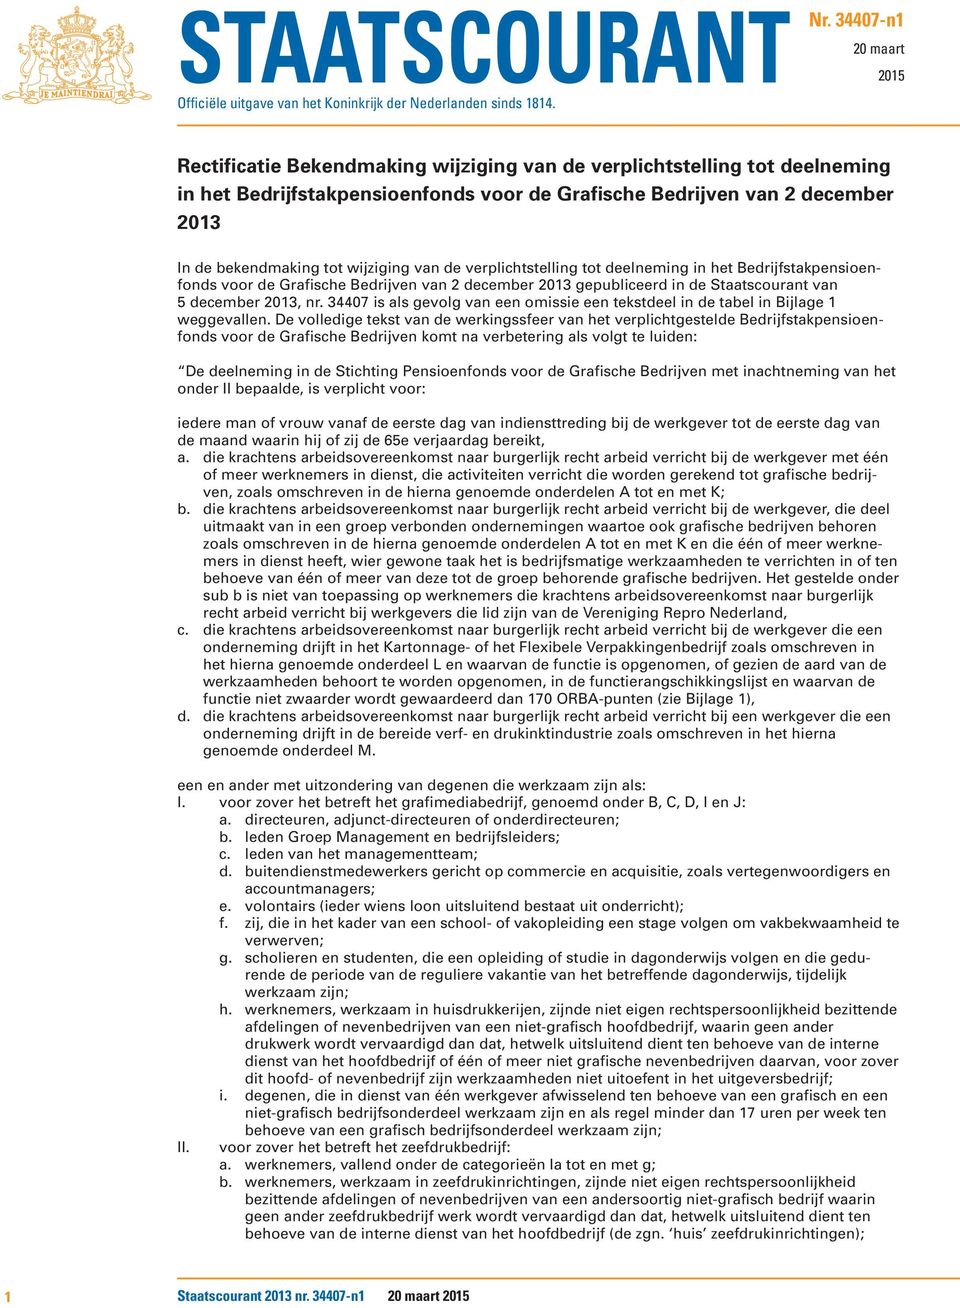 tot wijziging van de verplichtstelling tot deelneming in het Bedrijfstakpensioenfonds voor de Grafische Bedrijven van 2 december 2013 gepubliceerd in de Staatscourant van 5 december 2013, nr.